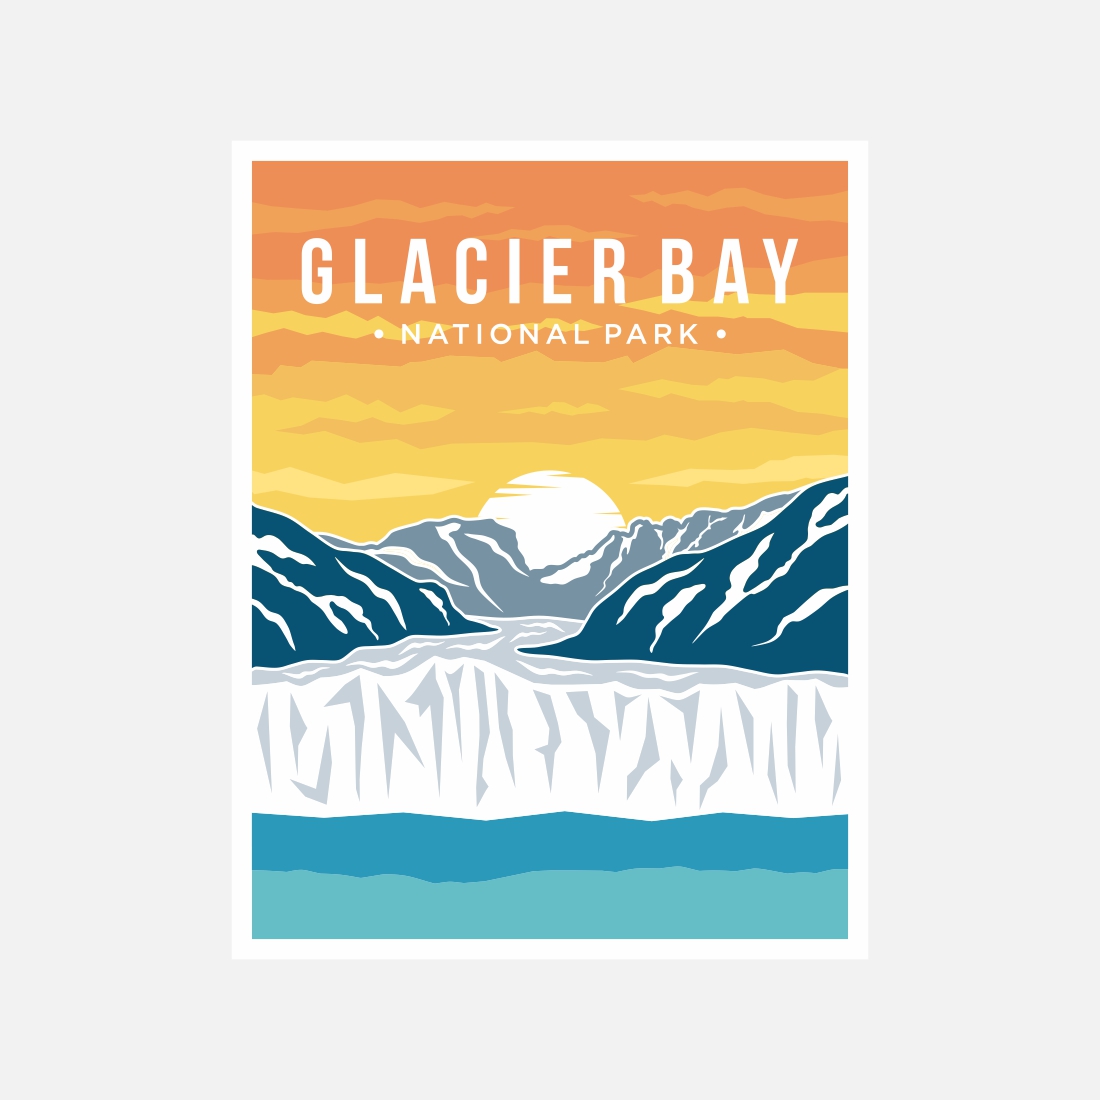 Glacier Bay National Park poster vector illustration design – Only $8 preview image.